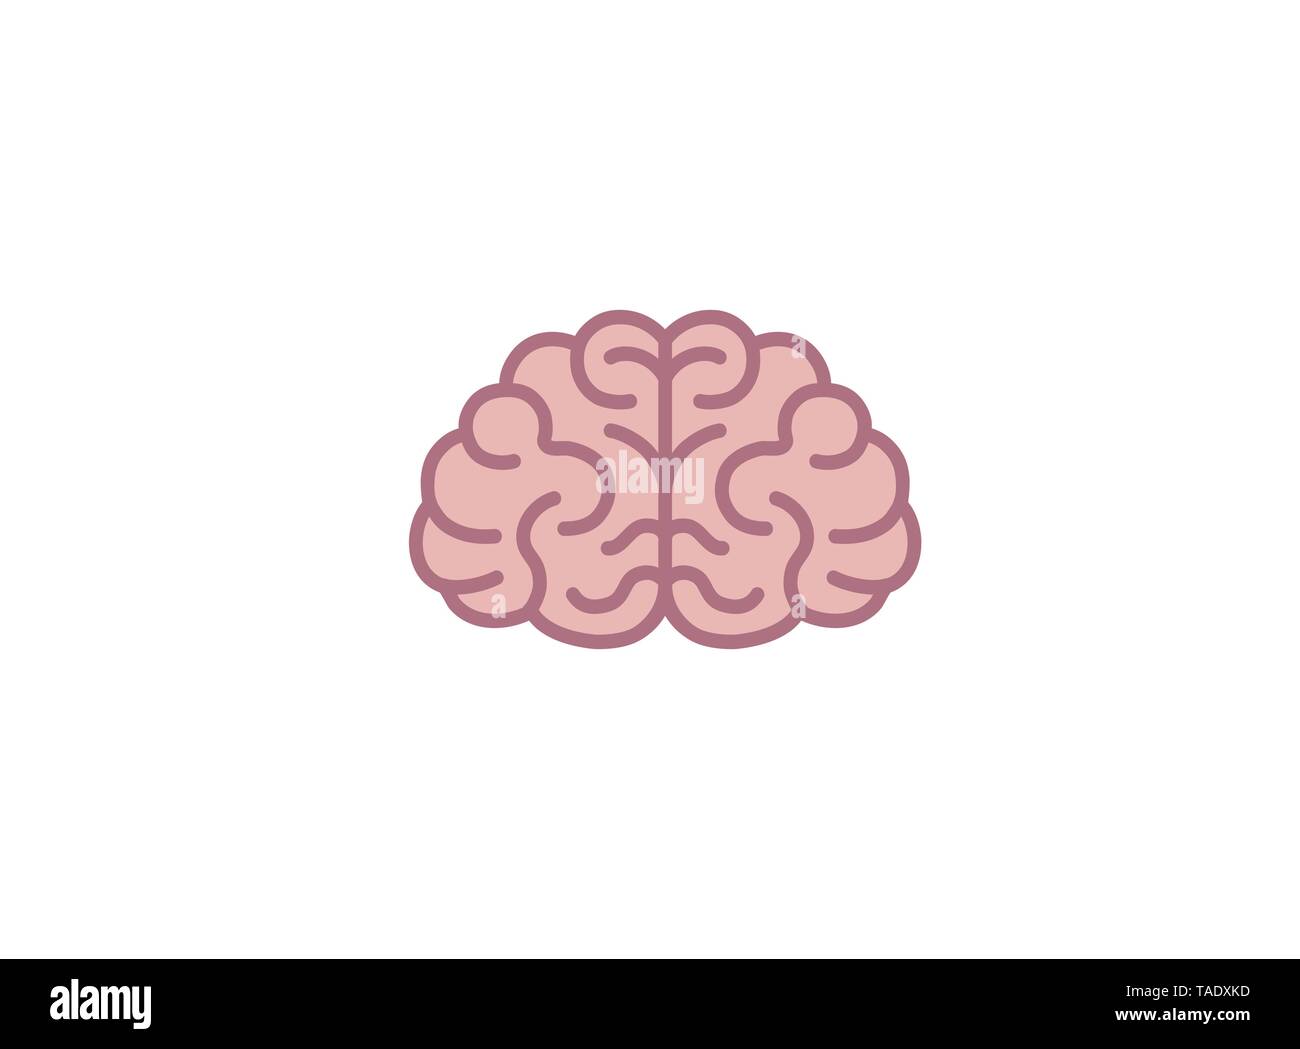 Creative Abstract Brain Logo Vector Design Illustration Stock Vector